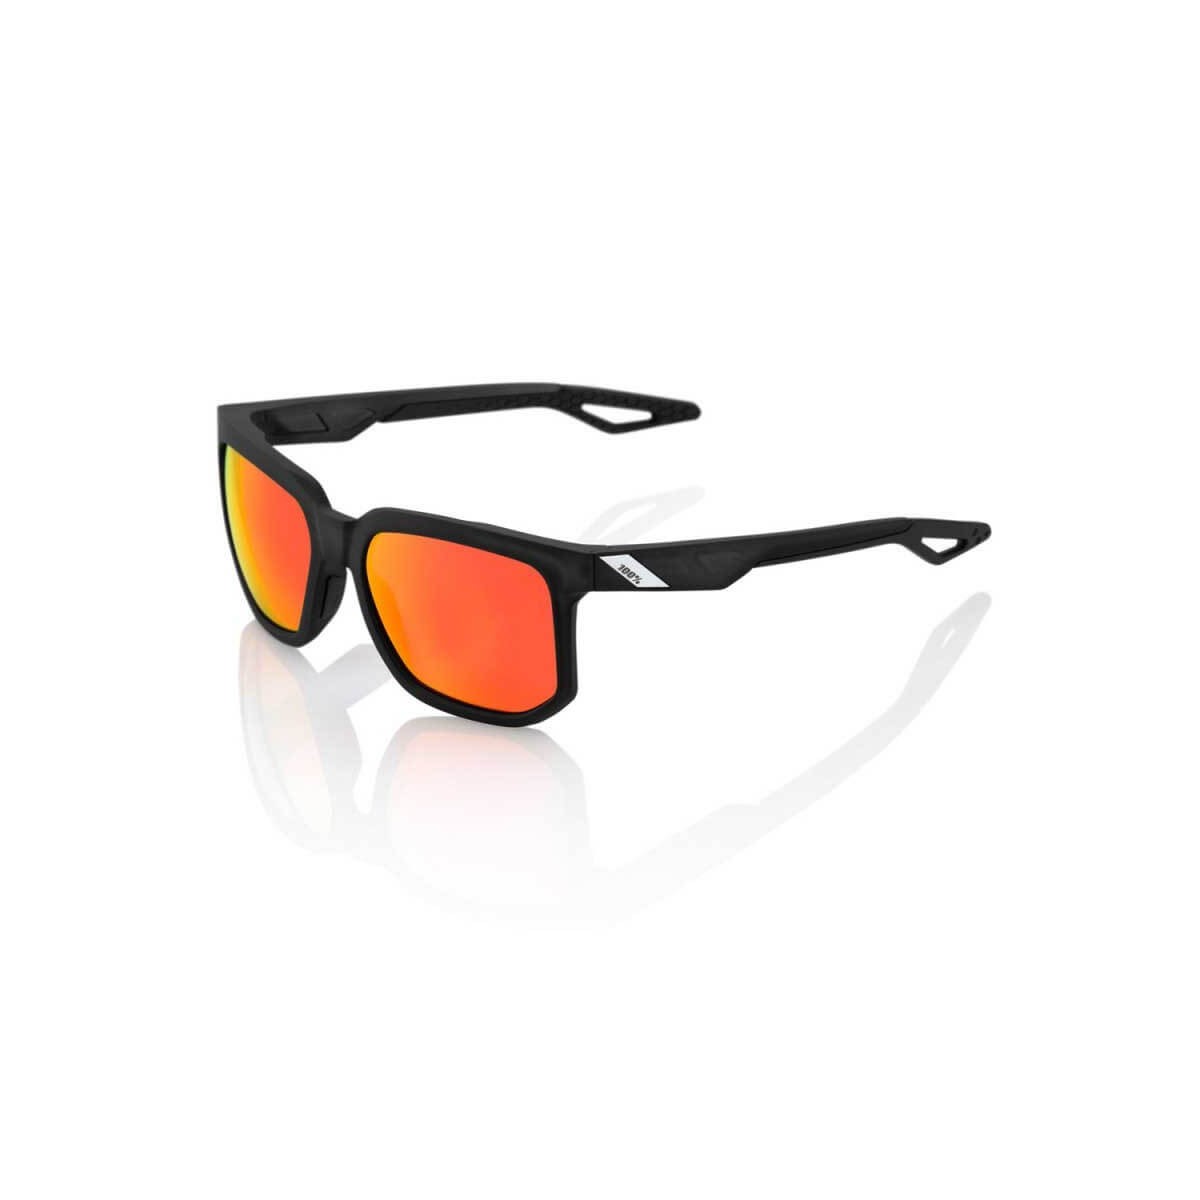 Image of 100% zentrische schwarze Brille mit roter HD-Spiegellinse